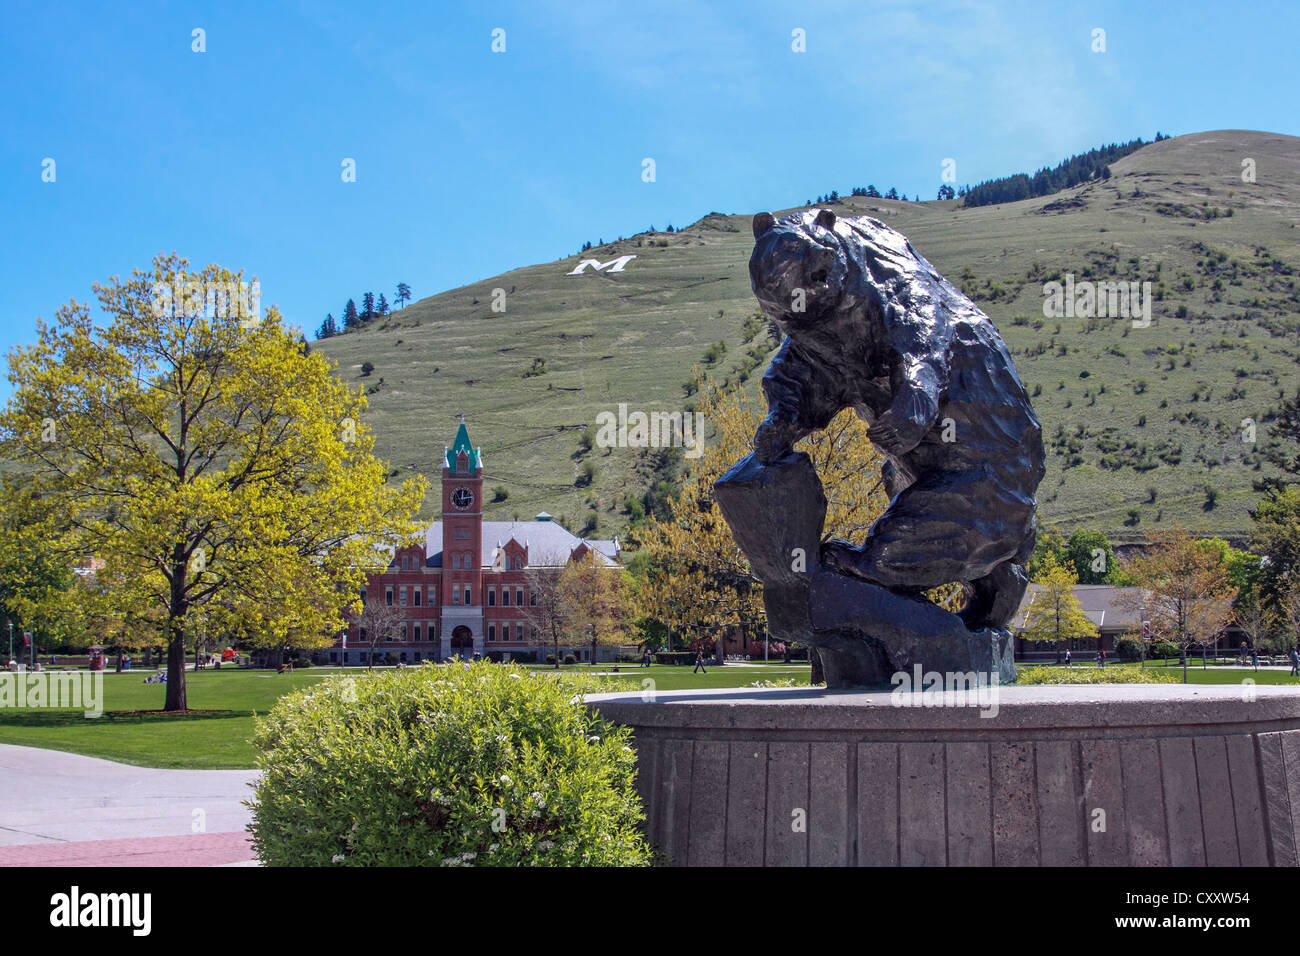 Le scene del campus e agli edifici presso la University of Montana di Missoula Foto Stock